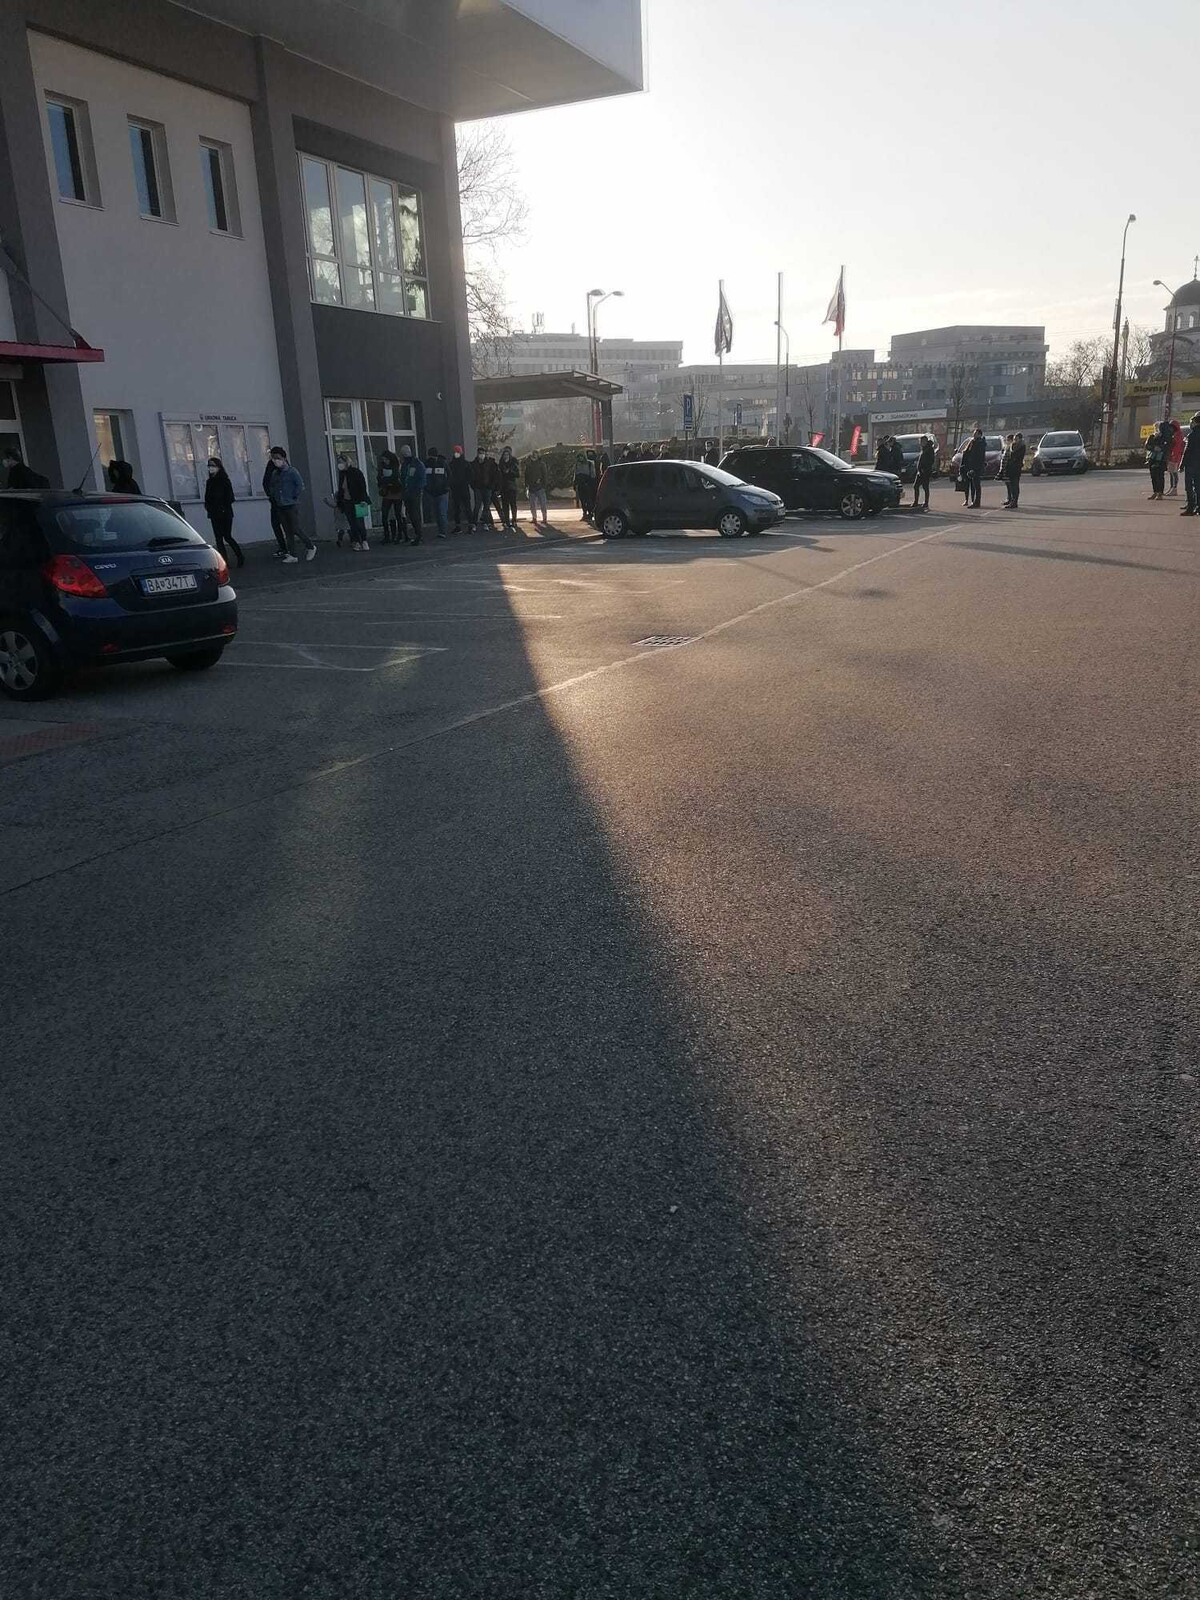 Situácia v Bratislave v pondelok 28. februára. Pred centrom čakal dlhý rad ľudí, mnohí z nich vybavujú pasy pre svoje deti.